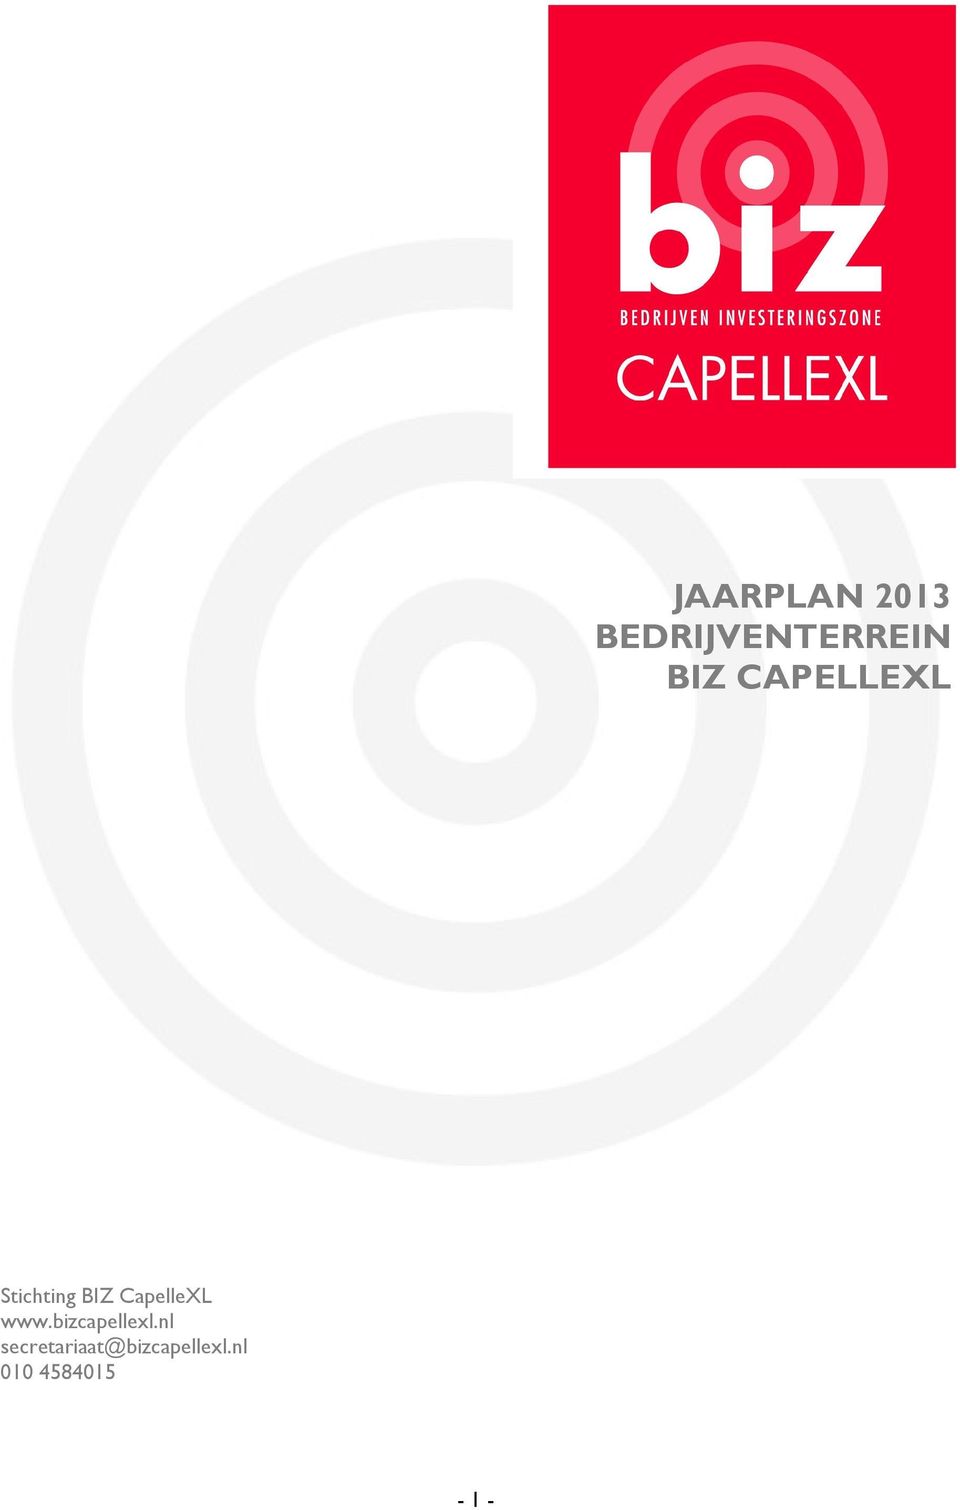 CapelleXL www.bizcapellexl.